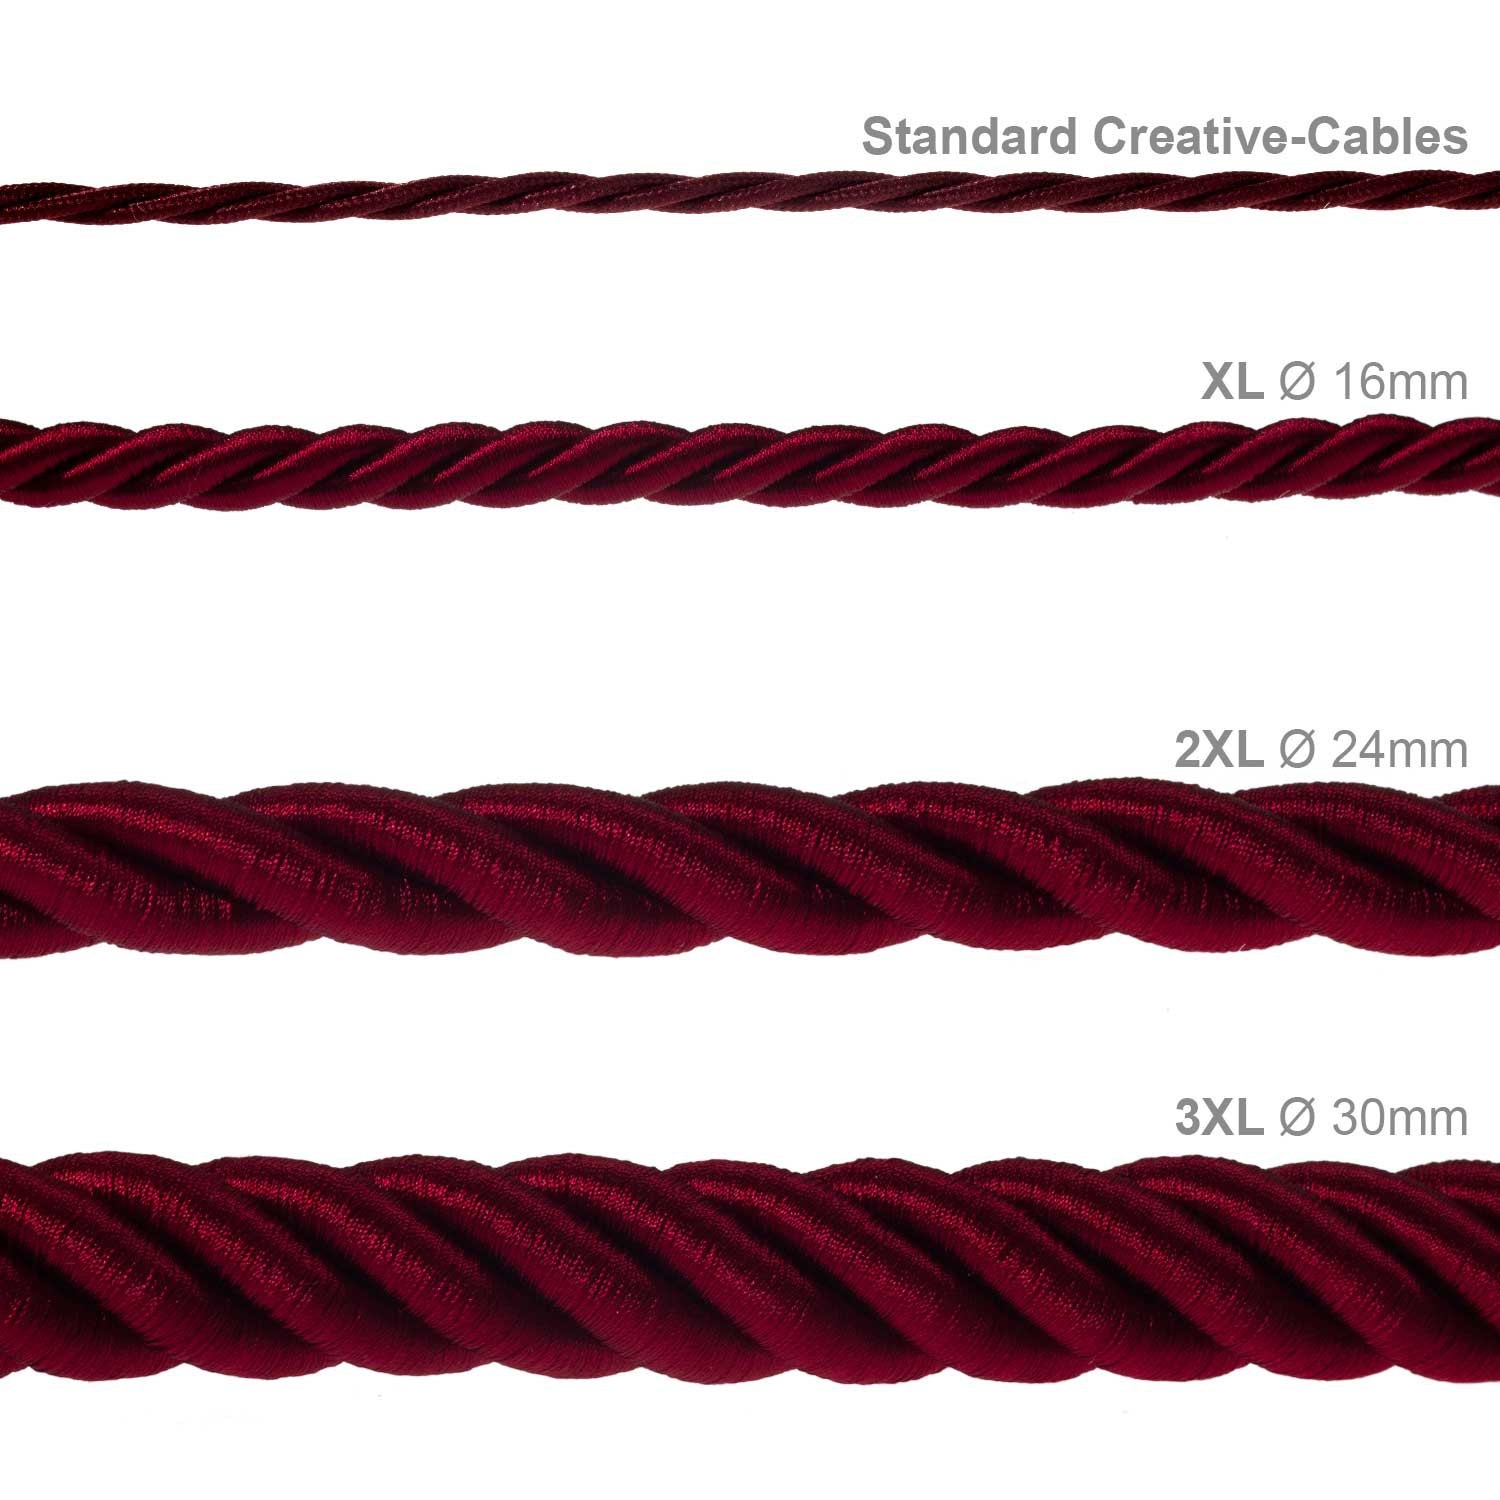 2XL električna vrv, električen kabel 3x0,75, prekrit s temno bordo svetlečim blagom. Premer 24mm.